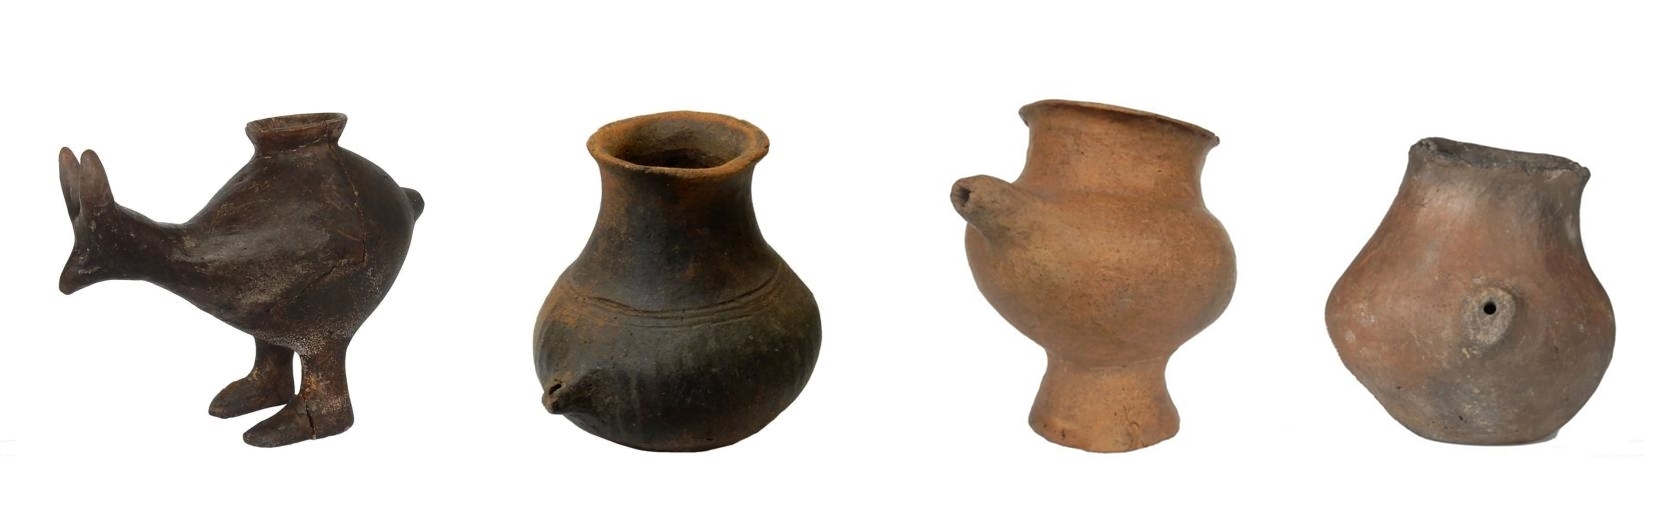 陶奶瓶約從7000年前開始出現在歐洲，其中有些還是動物造型的。這幾個樣本可追溯到公元前1200-800年。PHOTOGRAPH BY KATHARINA REBAY-SALISBURY